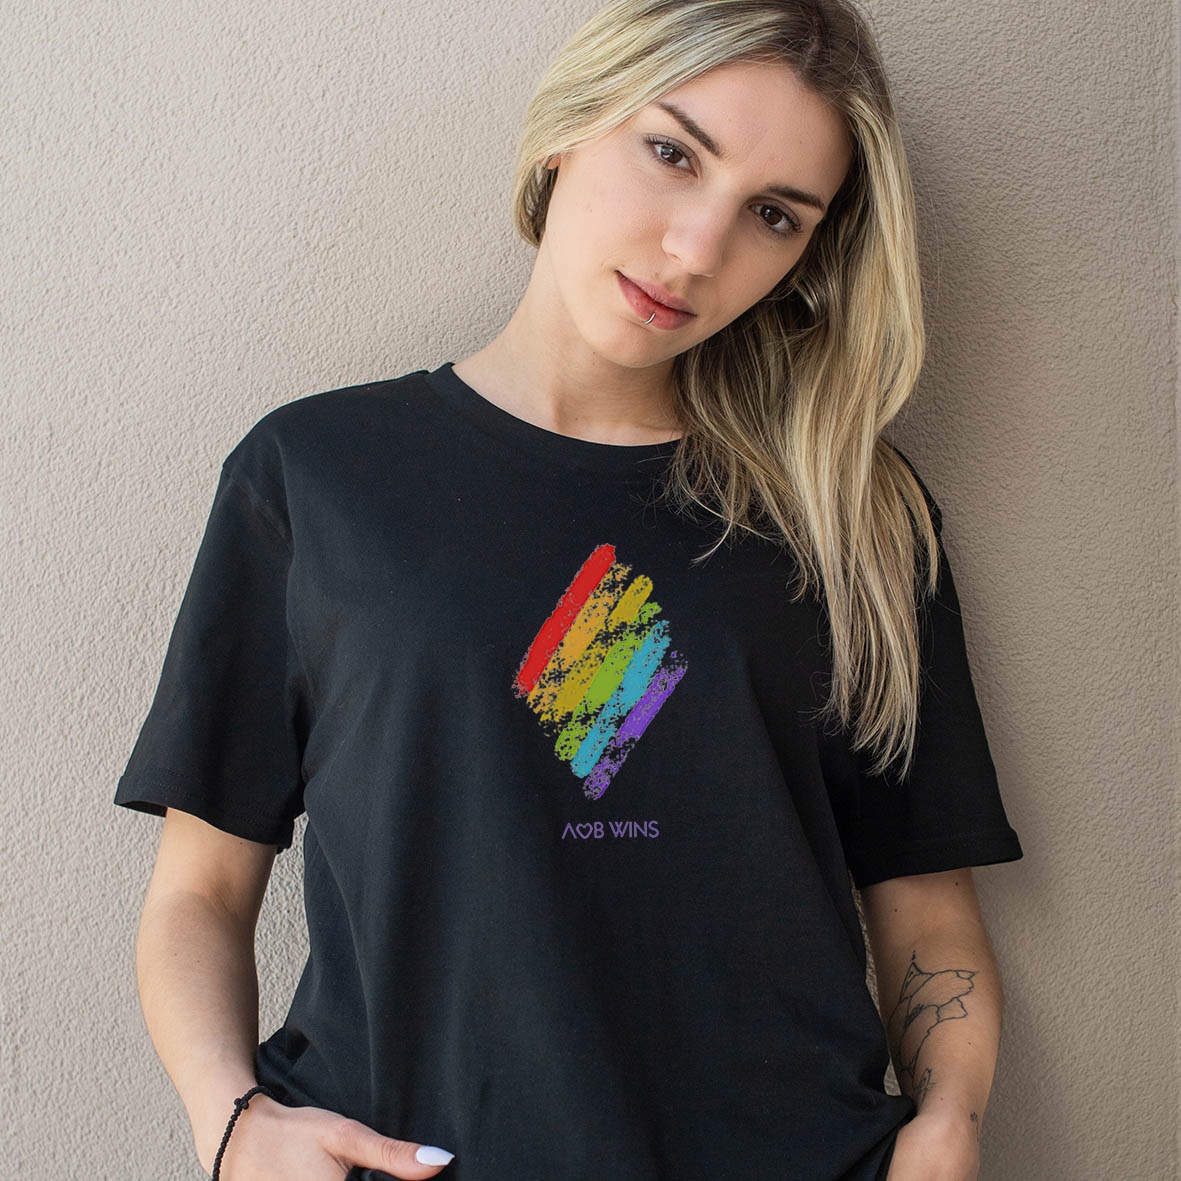 Λοβ Wins  - Organic Vegan T-Shirt Unisex